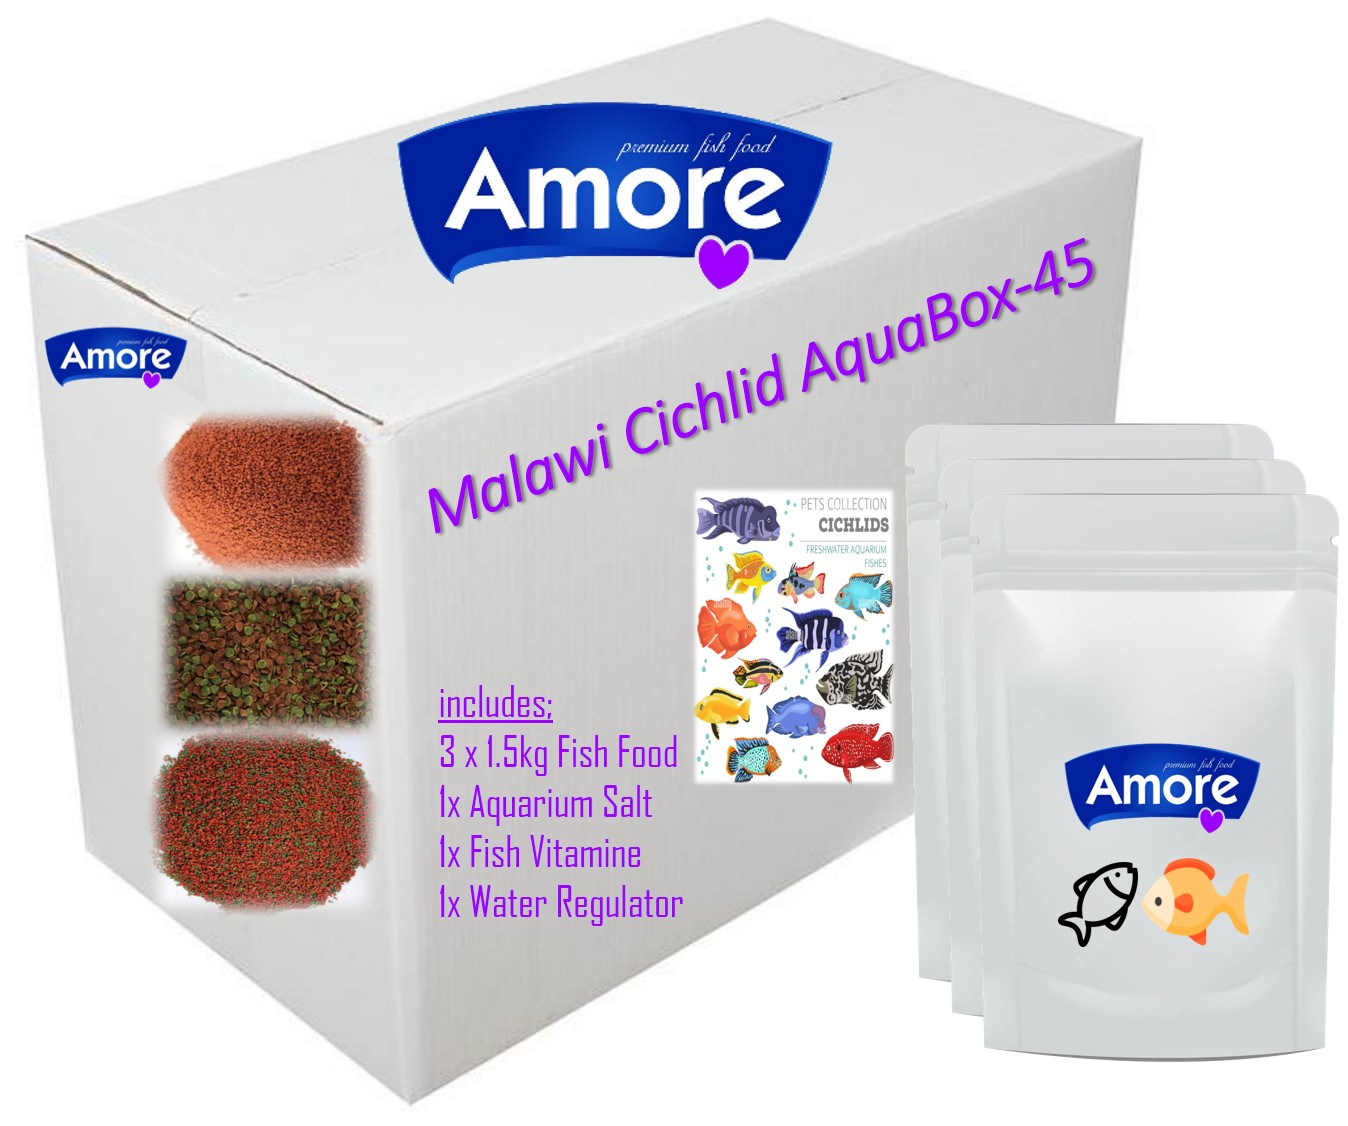 Amore Malawi Cichlid Balık Yemi 4.5kg Ve Akvaryum Bakım Seti Aquabox-45